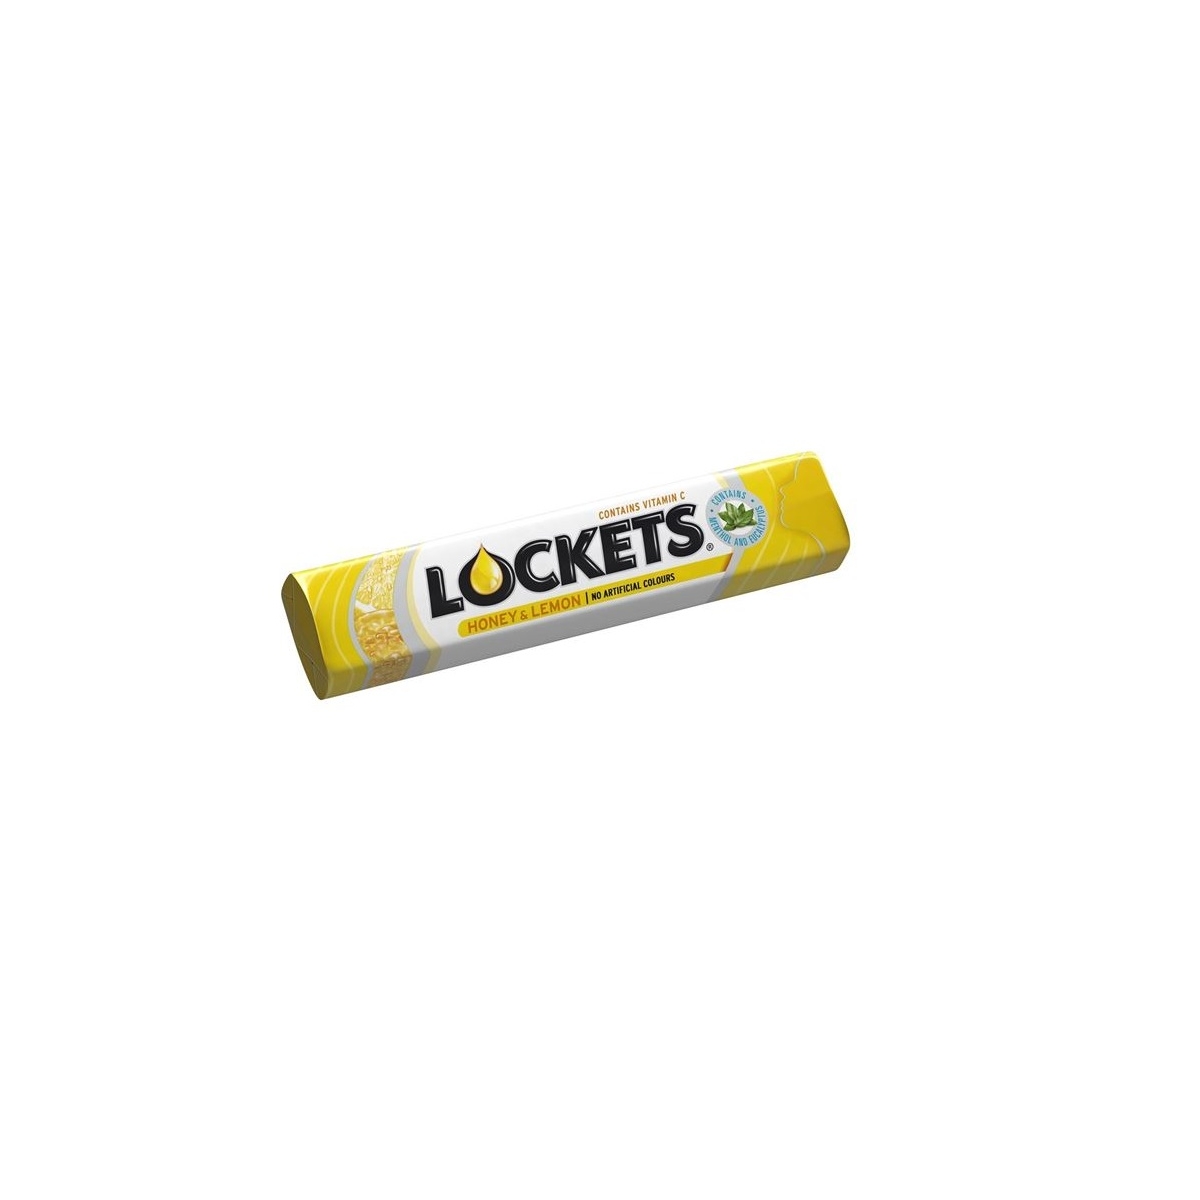 LOCKETS HONEY&LEMON 41G N1 (20)